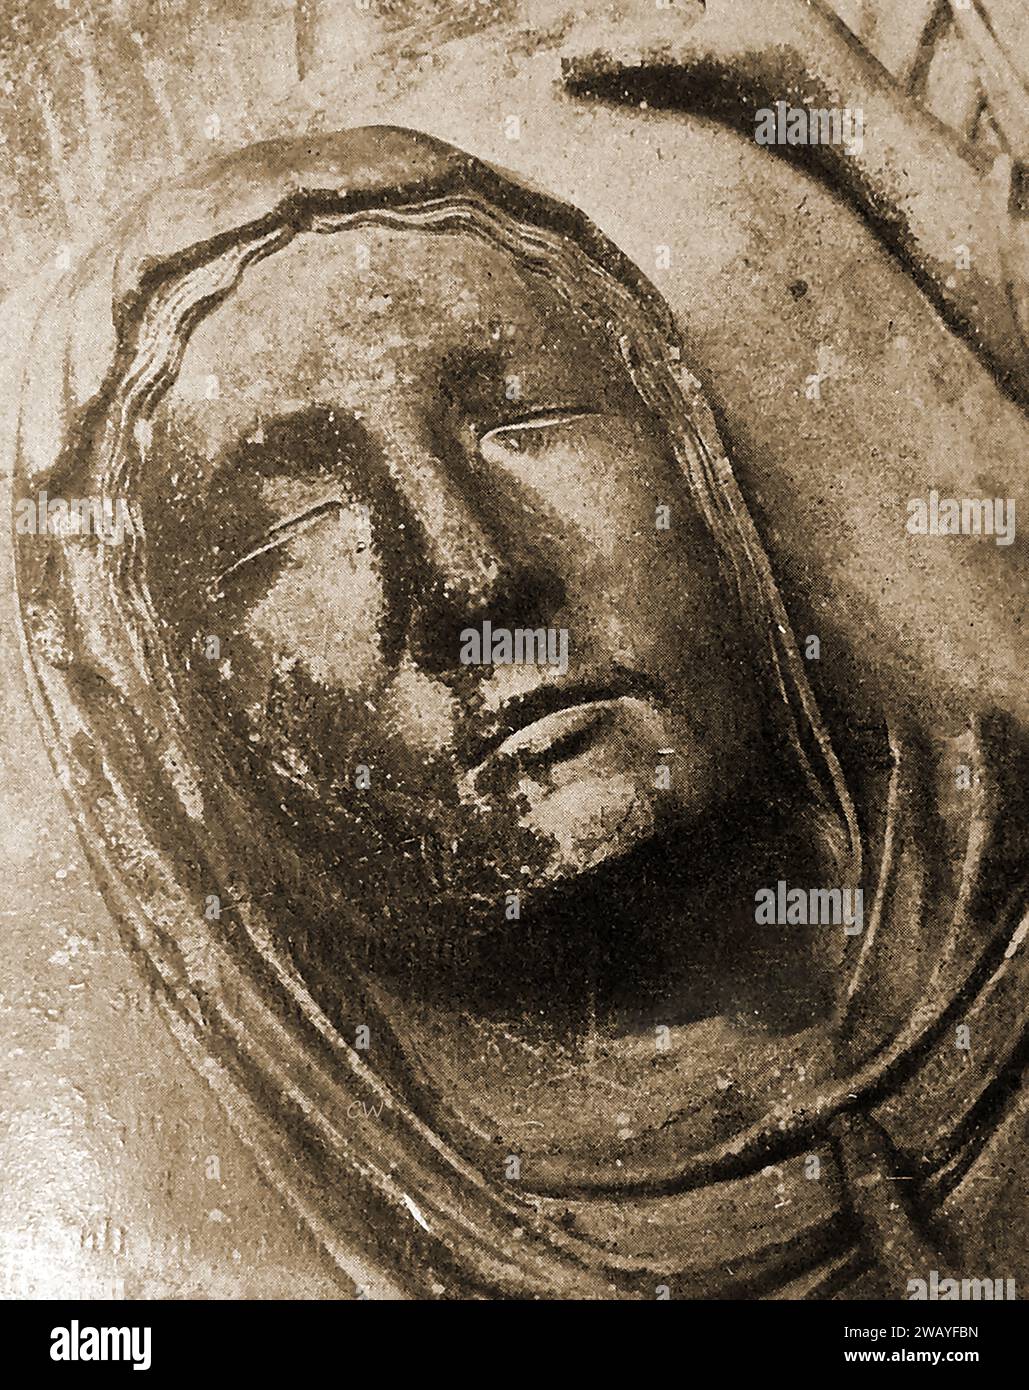 Kathedrale von Chartres, Frankreich im Jahr 1947 - ein Bild des Todes der Jungfrau von der nördlichen Veranda. - Cathédrale de Chartres, France en 1947 - Une image de la mort de la Vierge depuis le porche nord.- Stockfoto